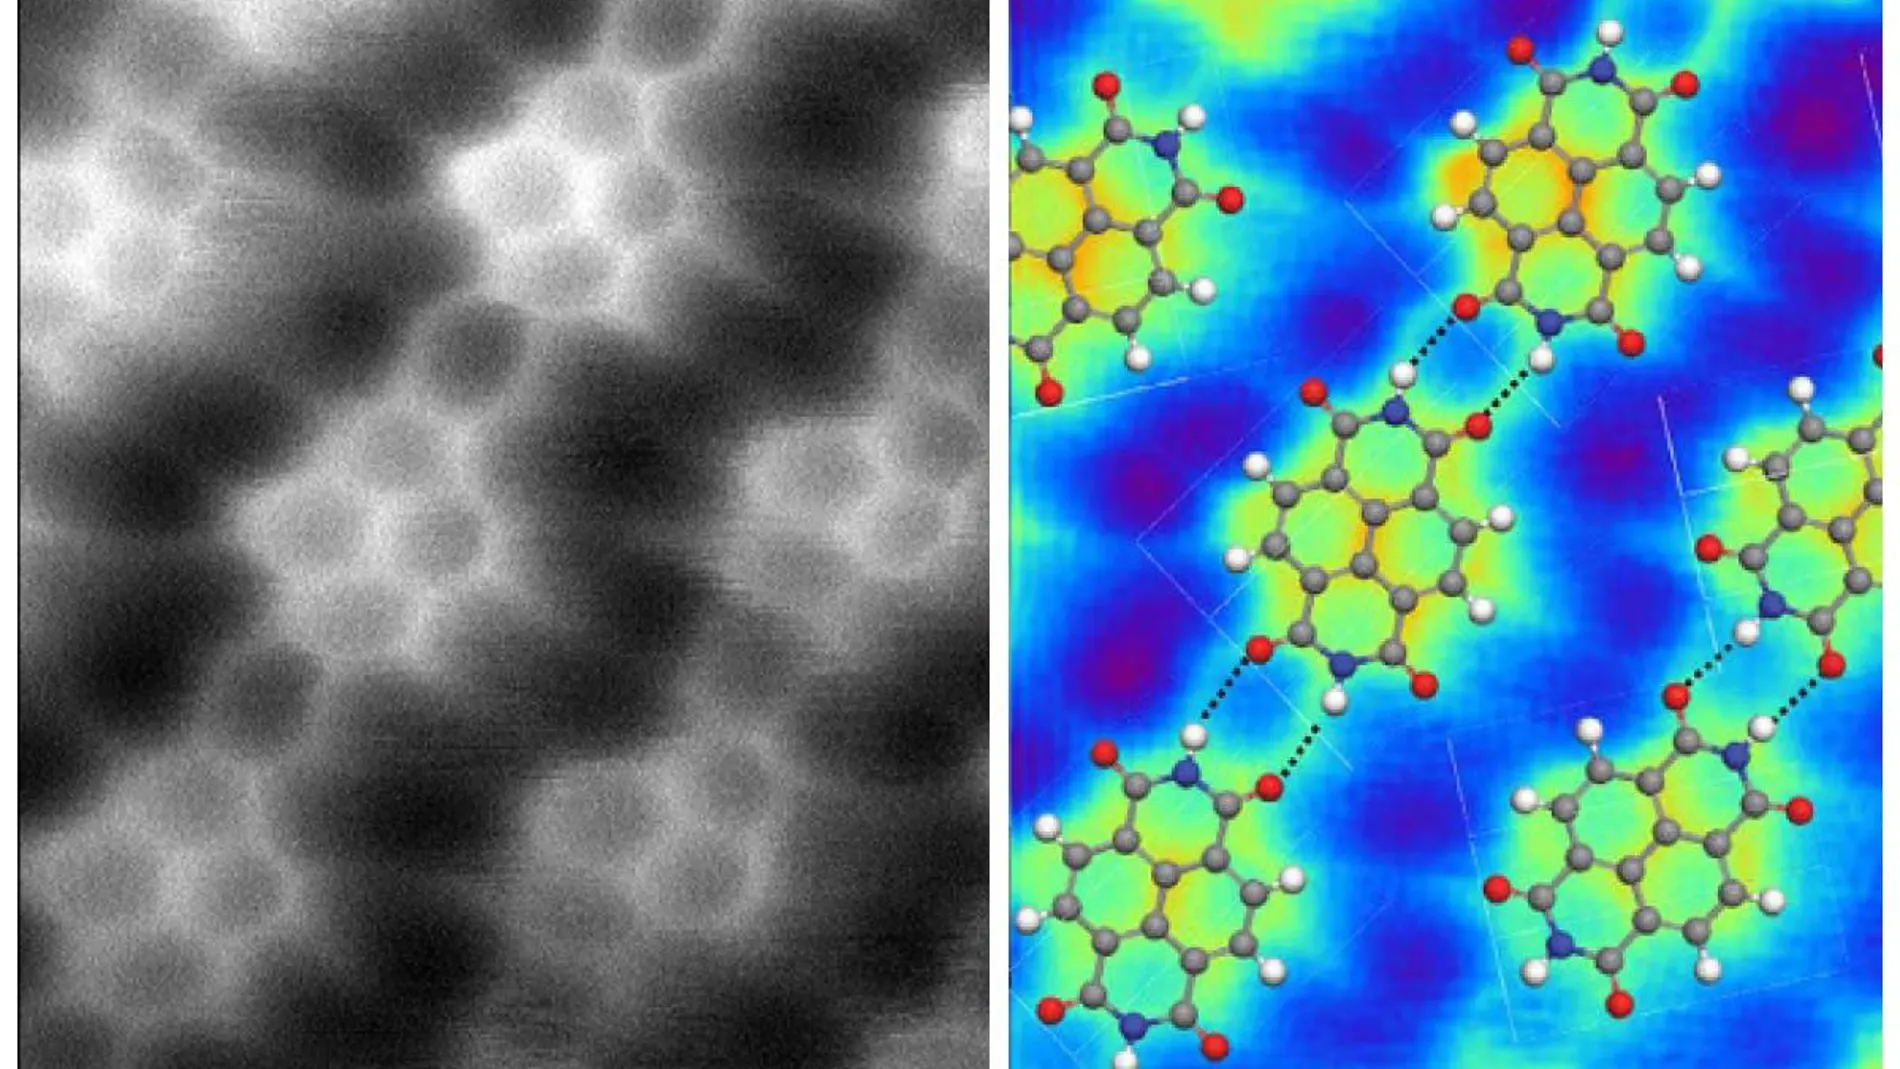 A la izquierda vemos una imagen de varias moléculas de diimida naftalenotetracarboxílica mediante microscopio de fuerza atómica. A la derecha vemos una simulación de ese mismo sistema, en la que la posición de los átomos se ha señalado mediante pelotas de colores: las pelotas grises son átomos de carbono, las blancas de hidrógeno, las rojas de oxígeno y las azules de nitrógeno. Las moléculas están unidas entre sí mediante puentes de hidrógeno, señalados mediante líneas de puntos, que conectan un átomo de nitrógeno y uno de oxígeno. En la imagen de la izquierda las regiones brillantes representan la posición de los electrones y, como vemos, nos permiten visualizar perfectamente los enlaces covalentes del interior de las moléculas. Sin embargo, vemos también que son perfectamente visibles los puentes de hidrógeno, como si en ellos hubiera un electrón “llenando el hueco” entre los átomos. Todo indica que en este caso se trata de un producto de la técnica experimental, que “inyecta” electrones en ese hueco, pero esto revela la existencia real de un puente entre el nitrógeno y el oxígeno, aunque en condiciones normales esté casi vacío.